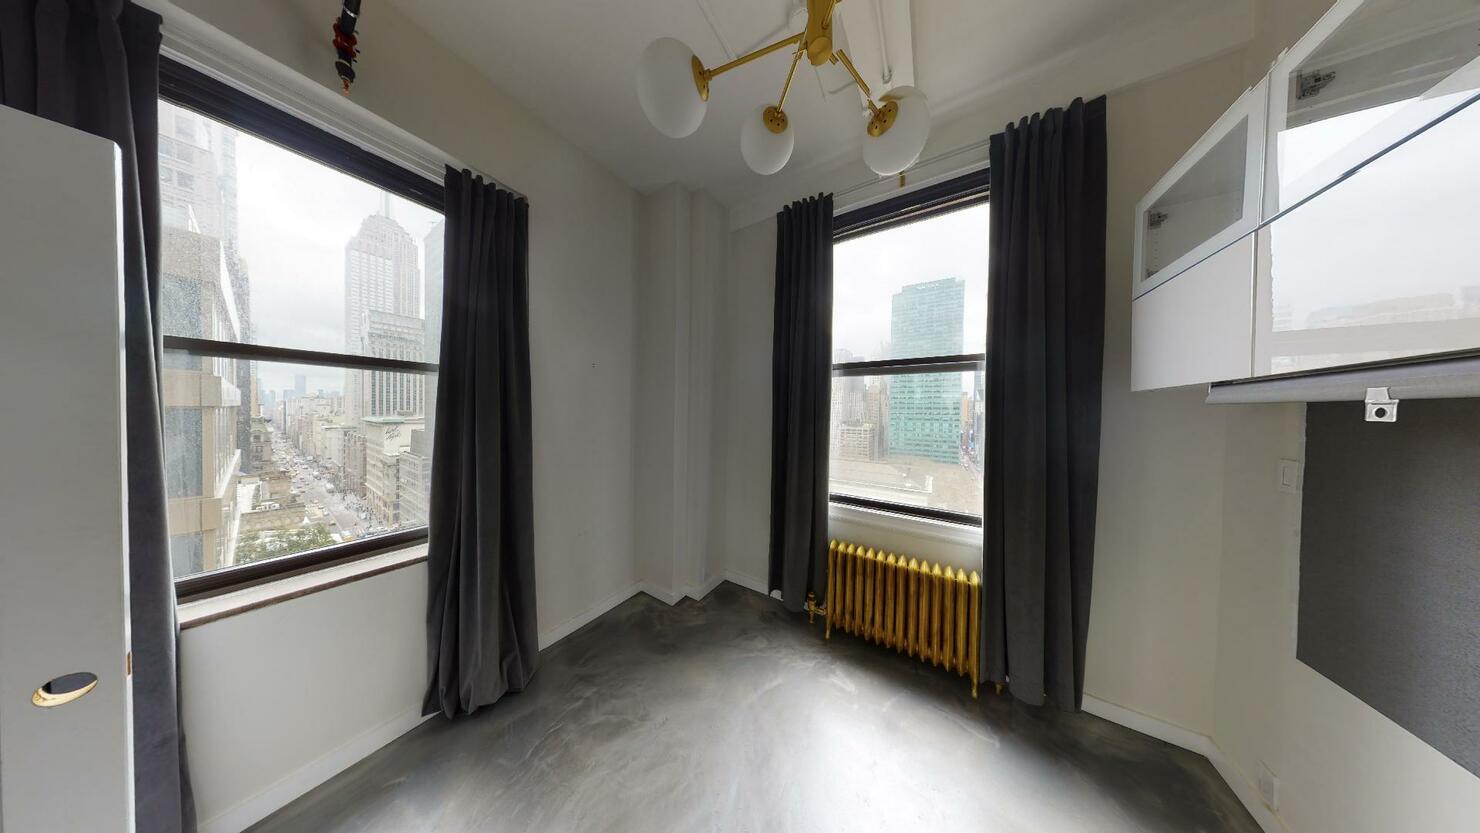 501 Fifth Avenue Office Space, Suite #1701 - Corner Windows